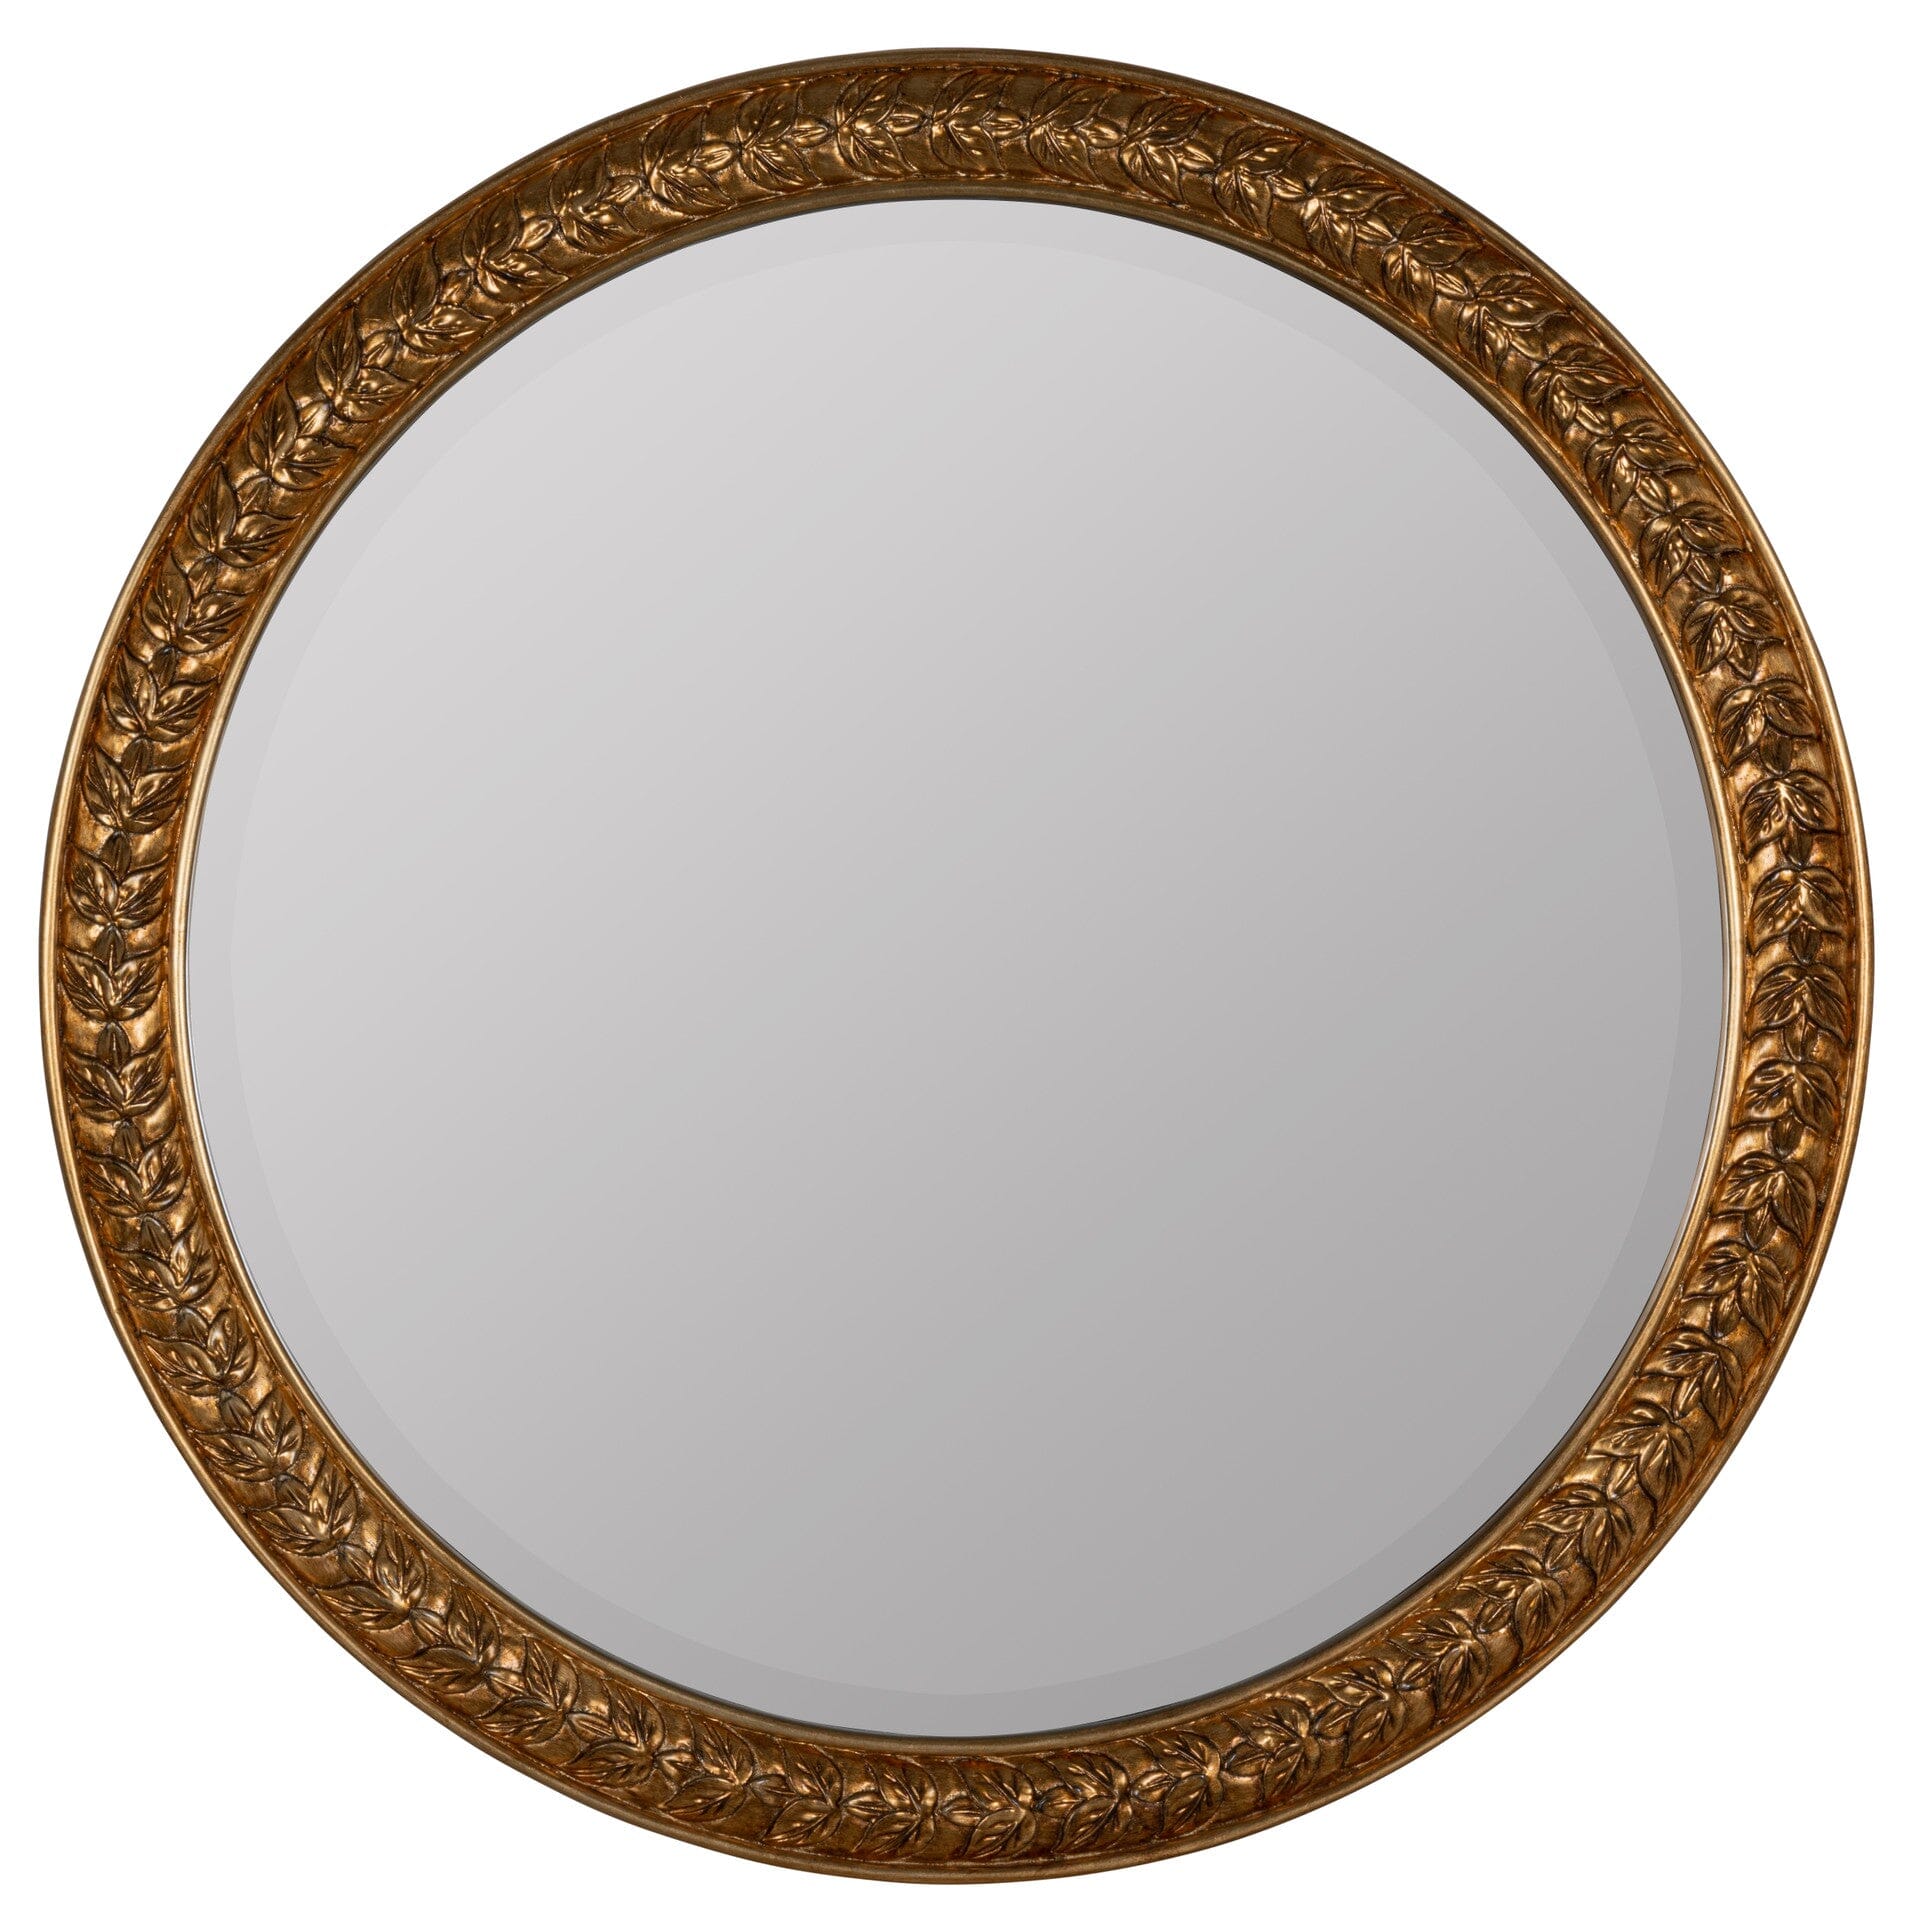 Laurel Round Mirror Mirrors 